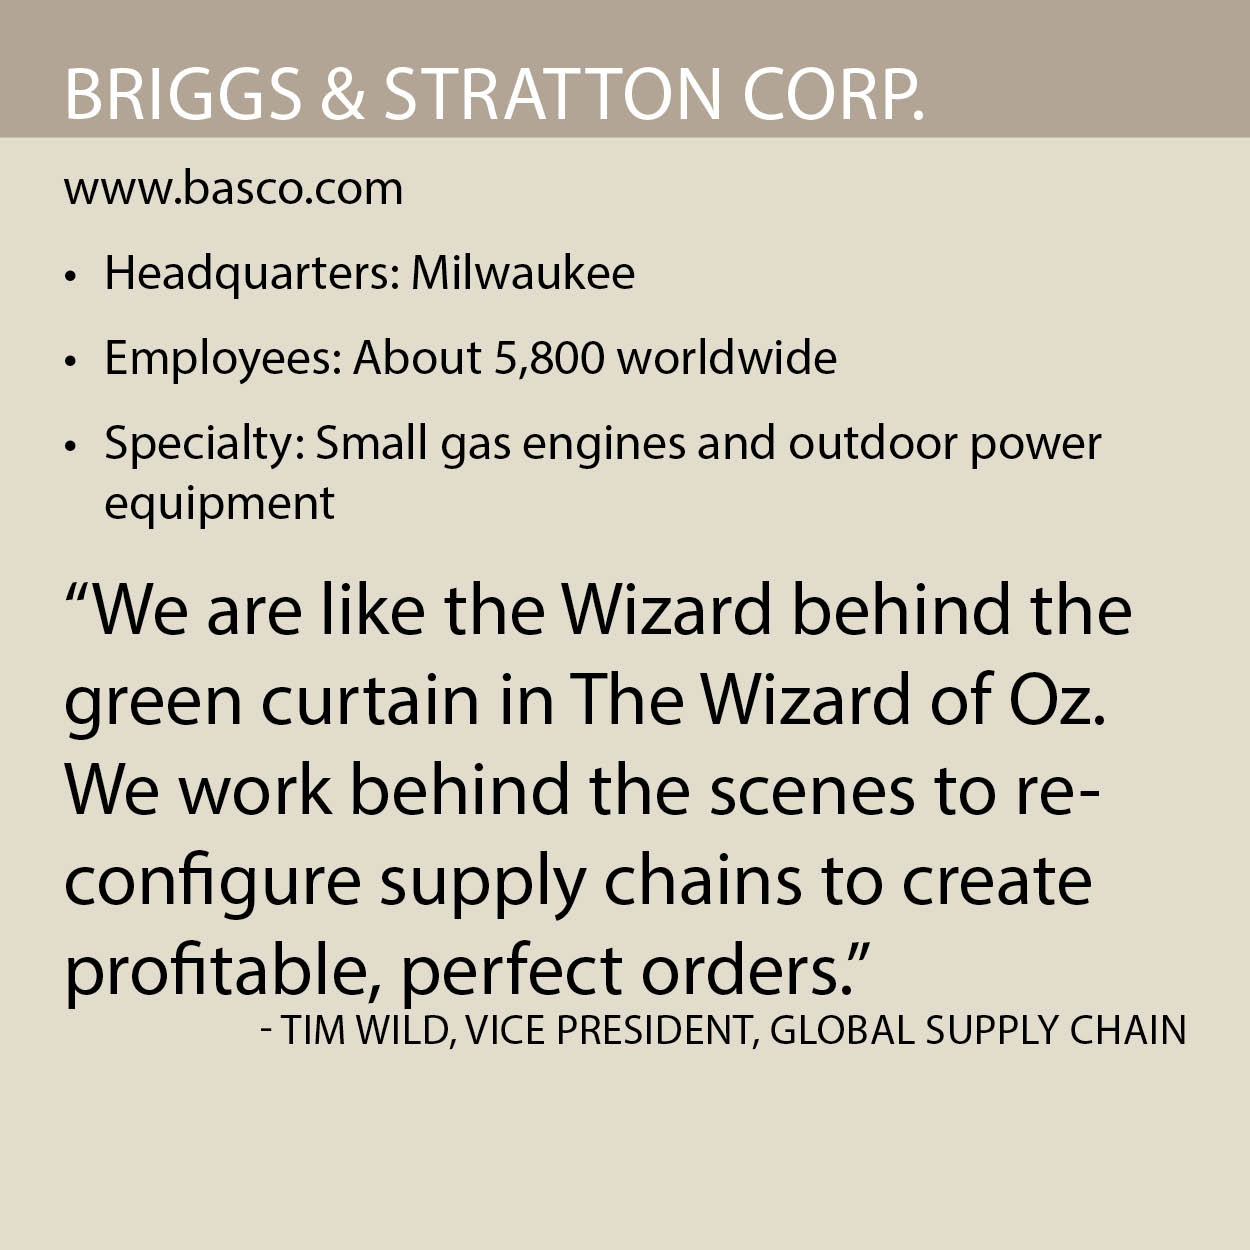 Briggs Stratton fact box